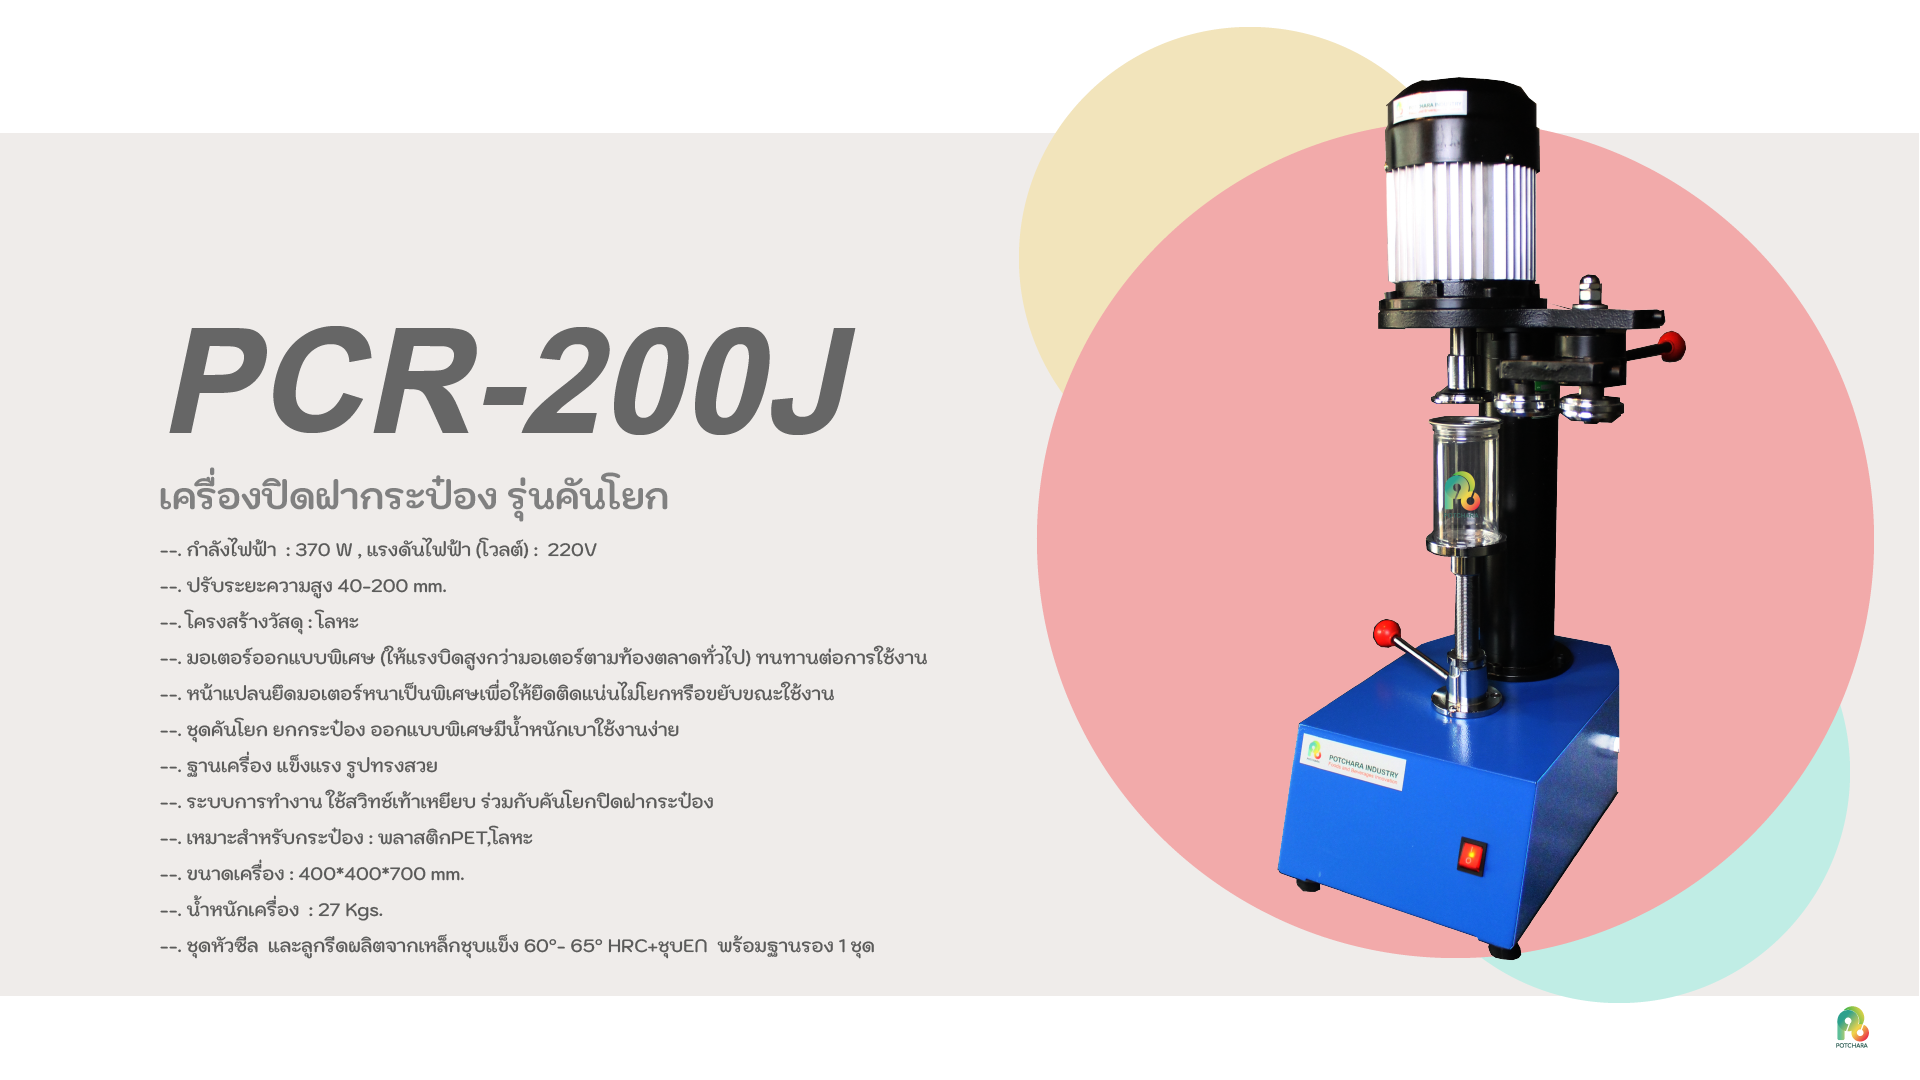 PCR-200J-2020